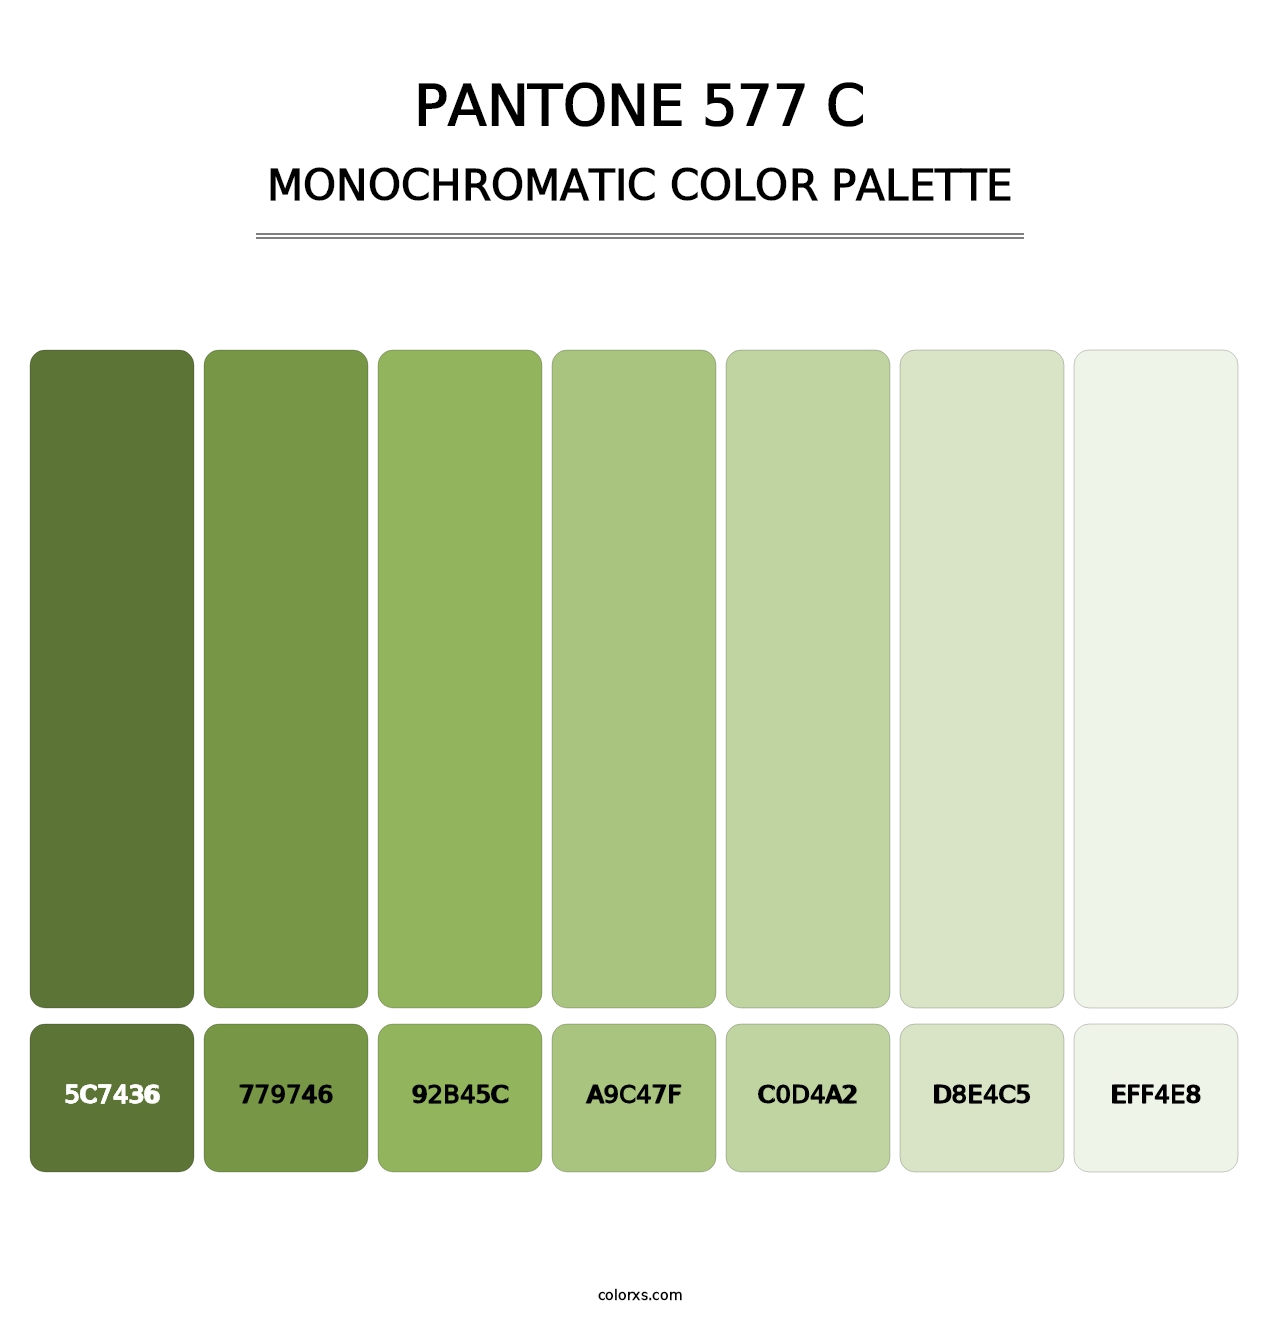 PANTONE 577 C - Monochromatic Color Palette